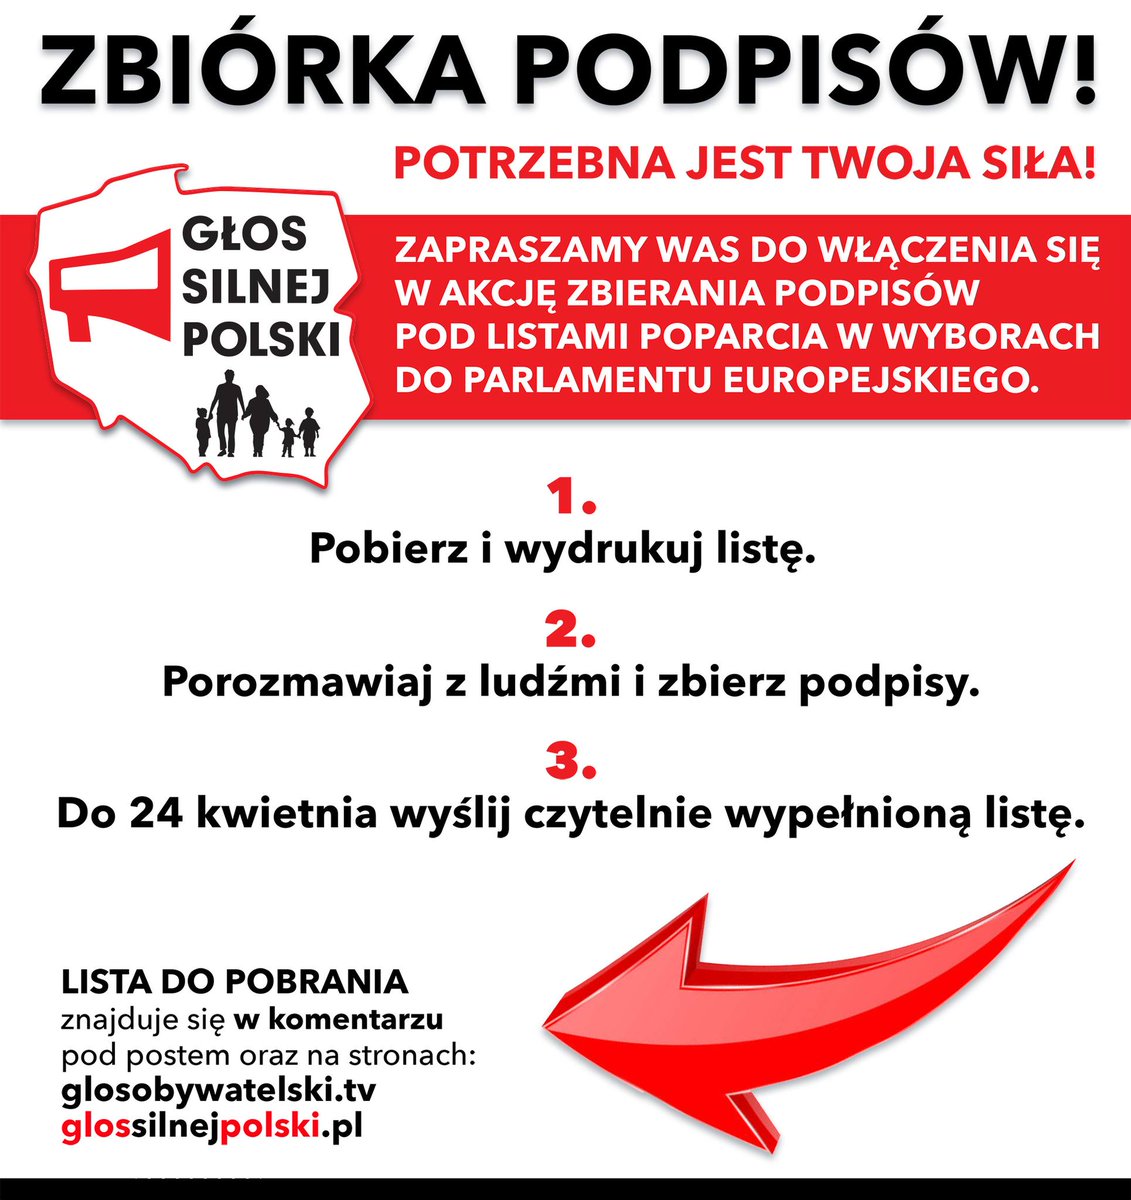 !!! ZJEDNOCZMY SIĘ !!! !!! ZBIERAJMY PODPISY !!! !!! LISTY DO POBRANIA (w komentarzu pod postem). #Polska #bezpiecznapolska #front #wolnosc #pokoj #tonienaszawojna #polexit #zjednoczenie #rodzina #dobrobyt #stopwho